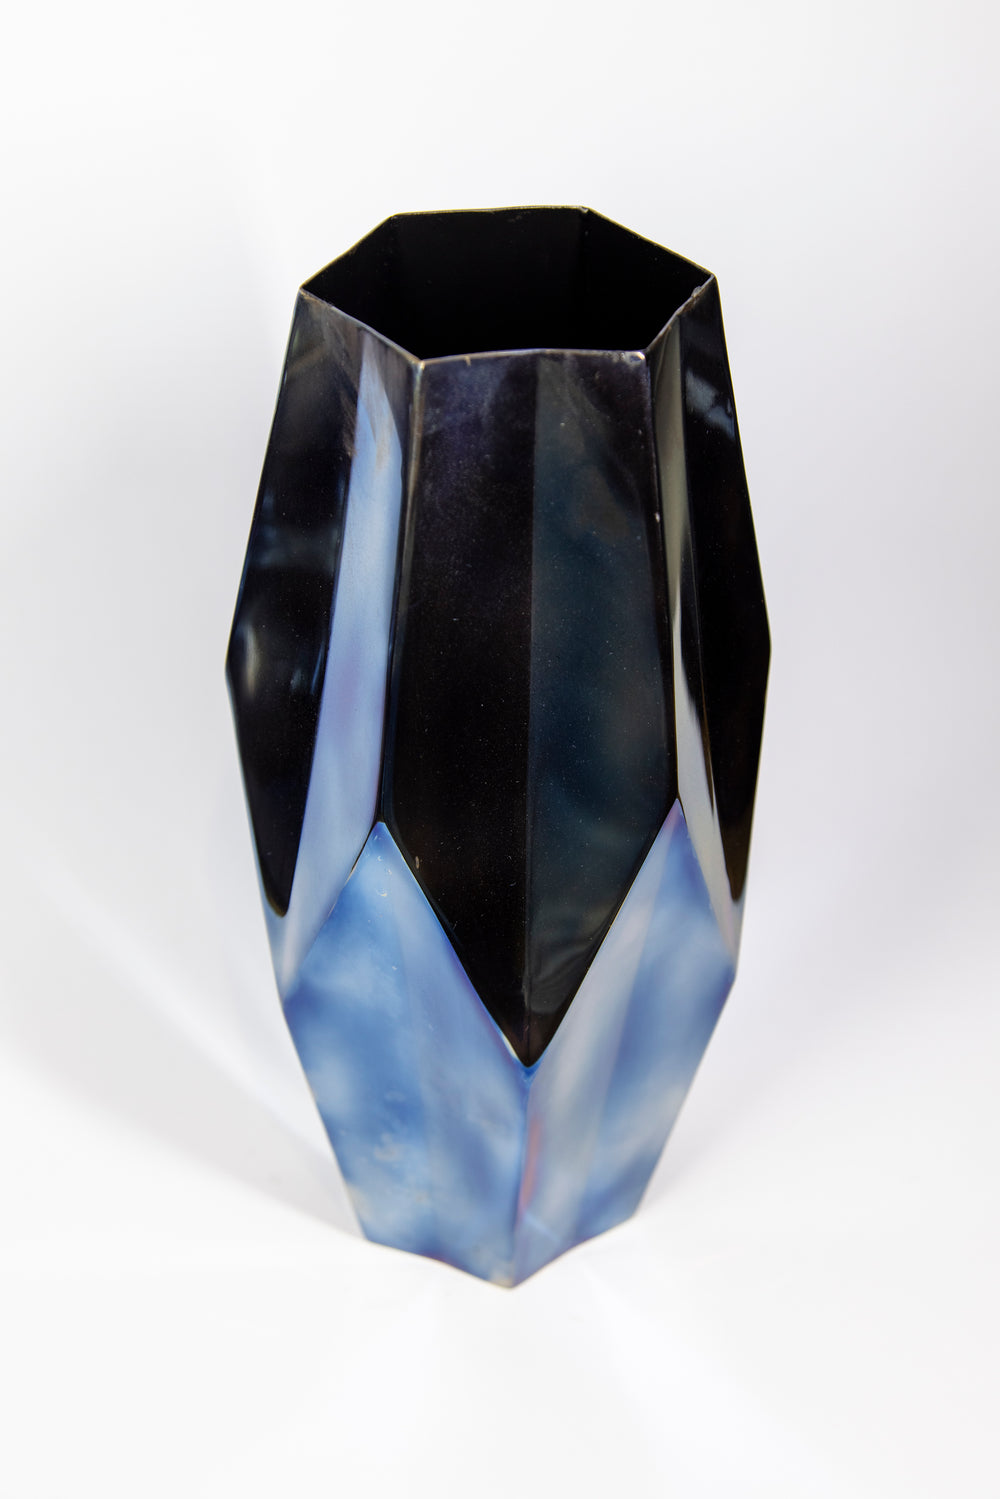 Prismic Flamed 12.5" Vase